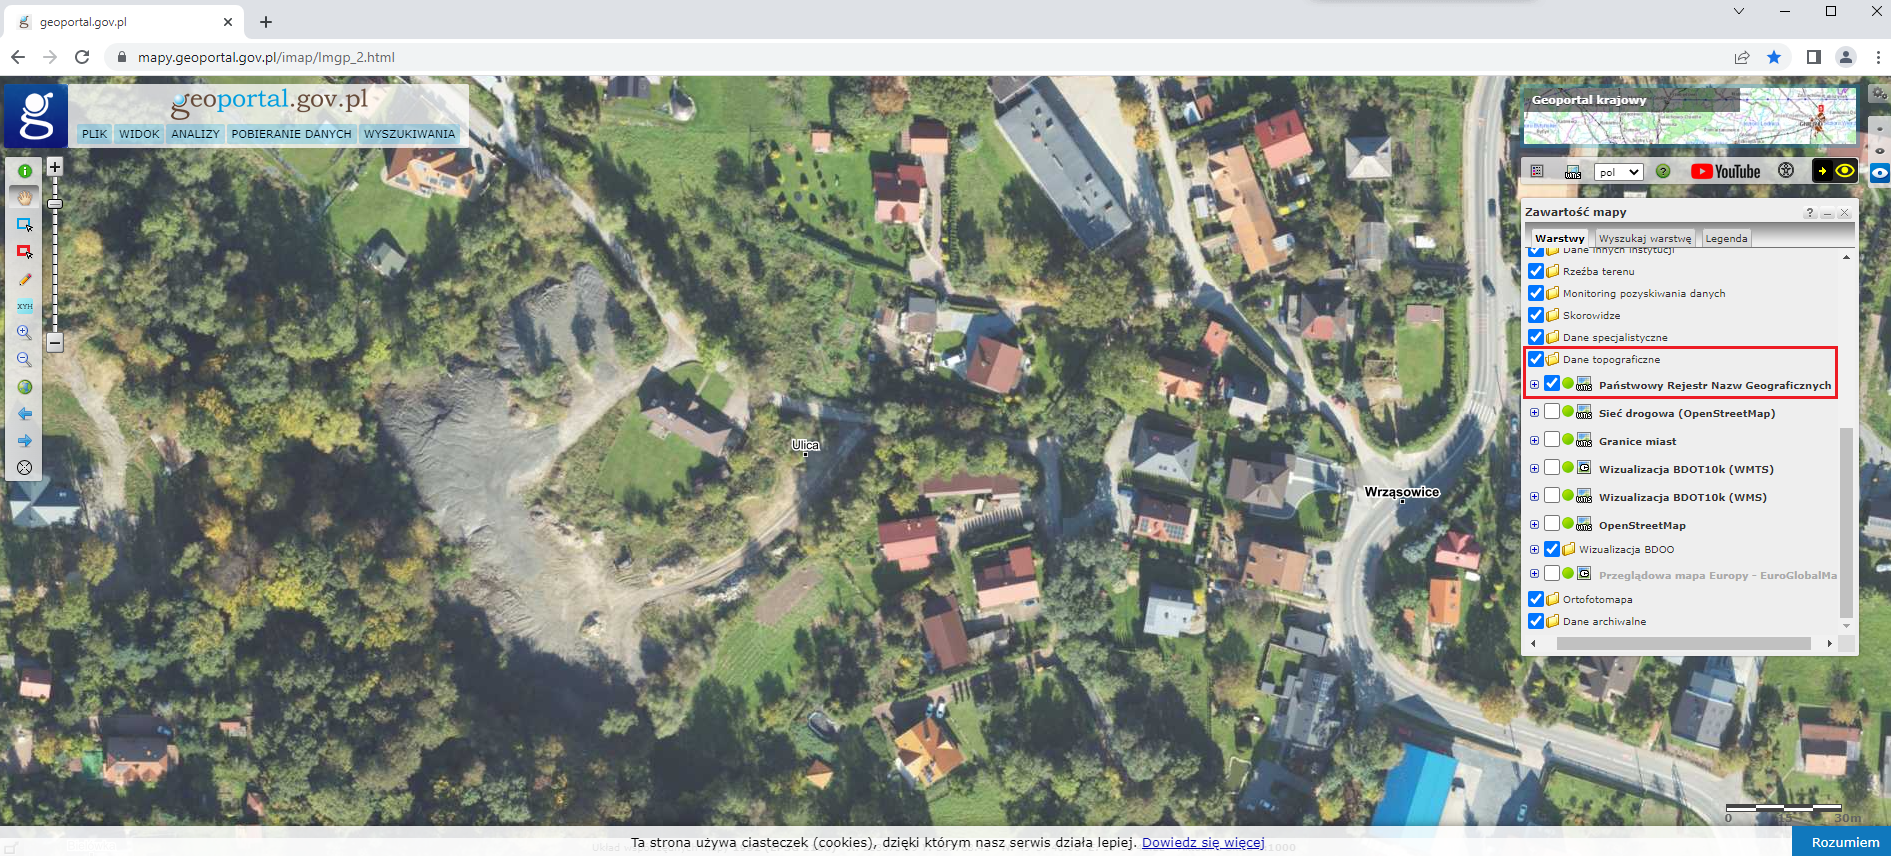 Ilustracja przedstawiająca zrzut ekranu z serwisu www.geoportal.gov.pl z zaznaczoną na podkładzie ortofotomapy lokalizacją urzędowej nazwy miejscowości Ulica, część wsi Wrząsowice.